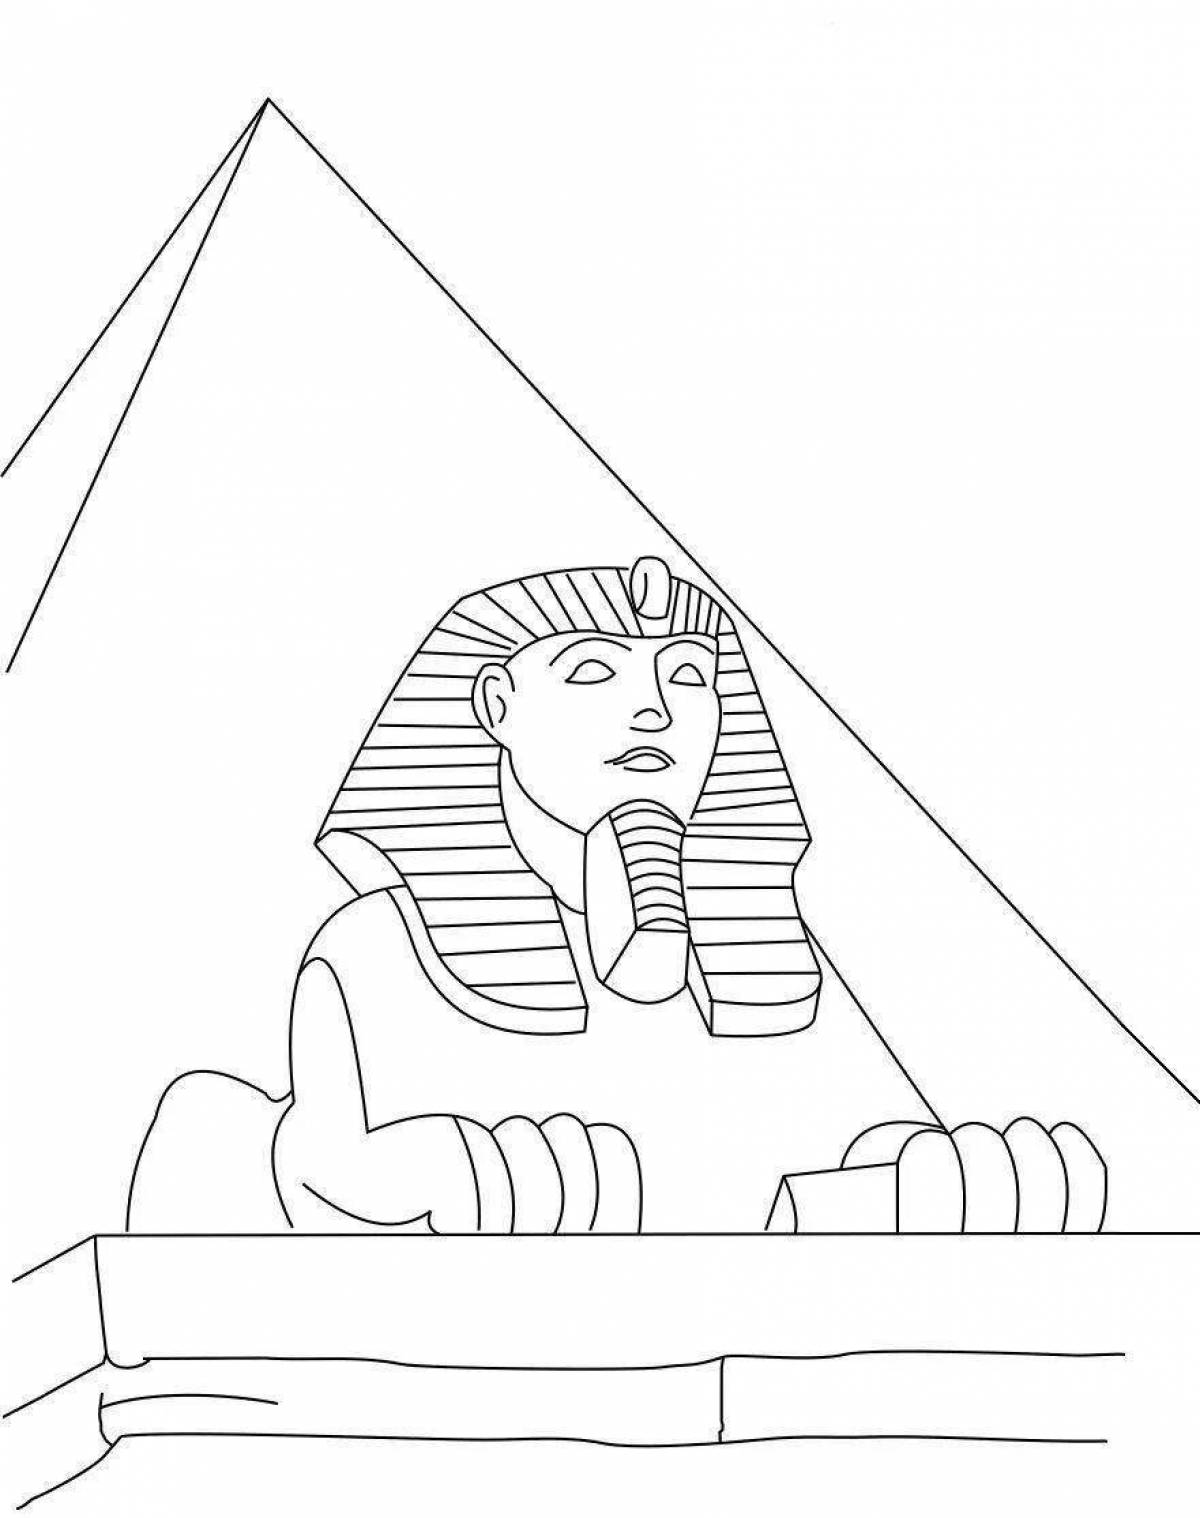 Рисунки древний мир 5 класс. Пирамиды и сфинксы древнего Египта. Древний Египет сфинкс раскрашенный. Древний Египет пирамида Хеопса рисунок. Сфинкс статуя в Египте рисунок.